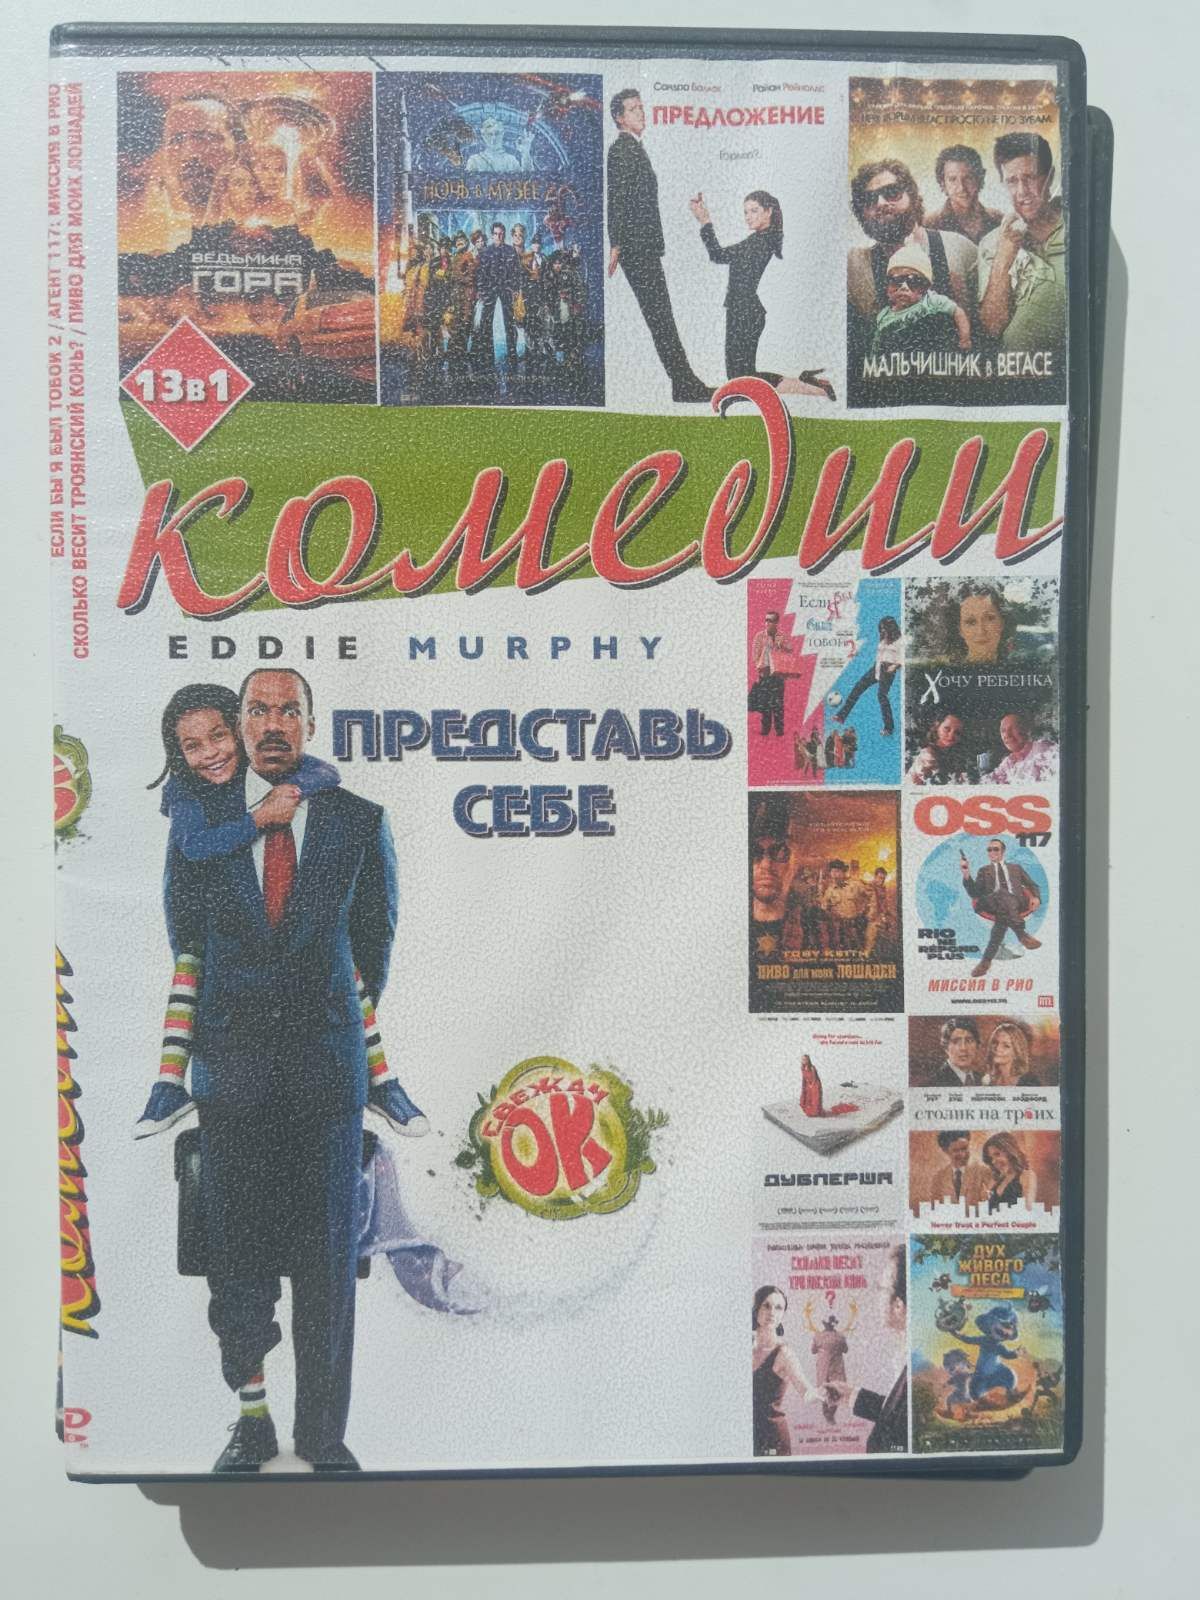 Диски DVD комедії в чудовому стані
Ціна вказана за всі 5 дисків
Переси